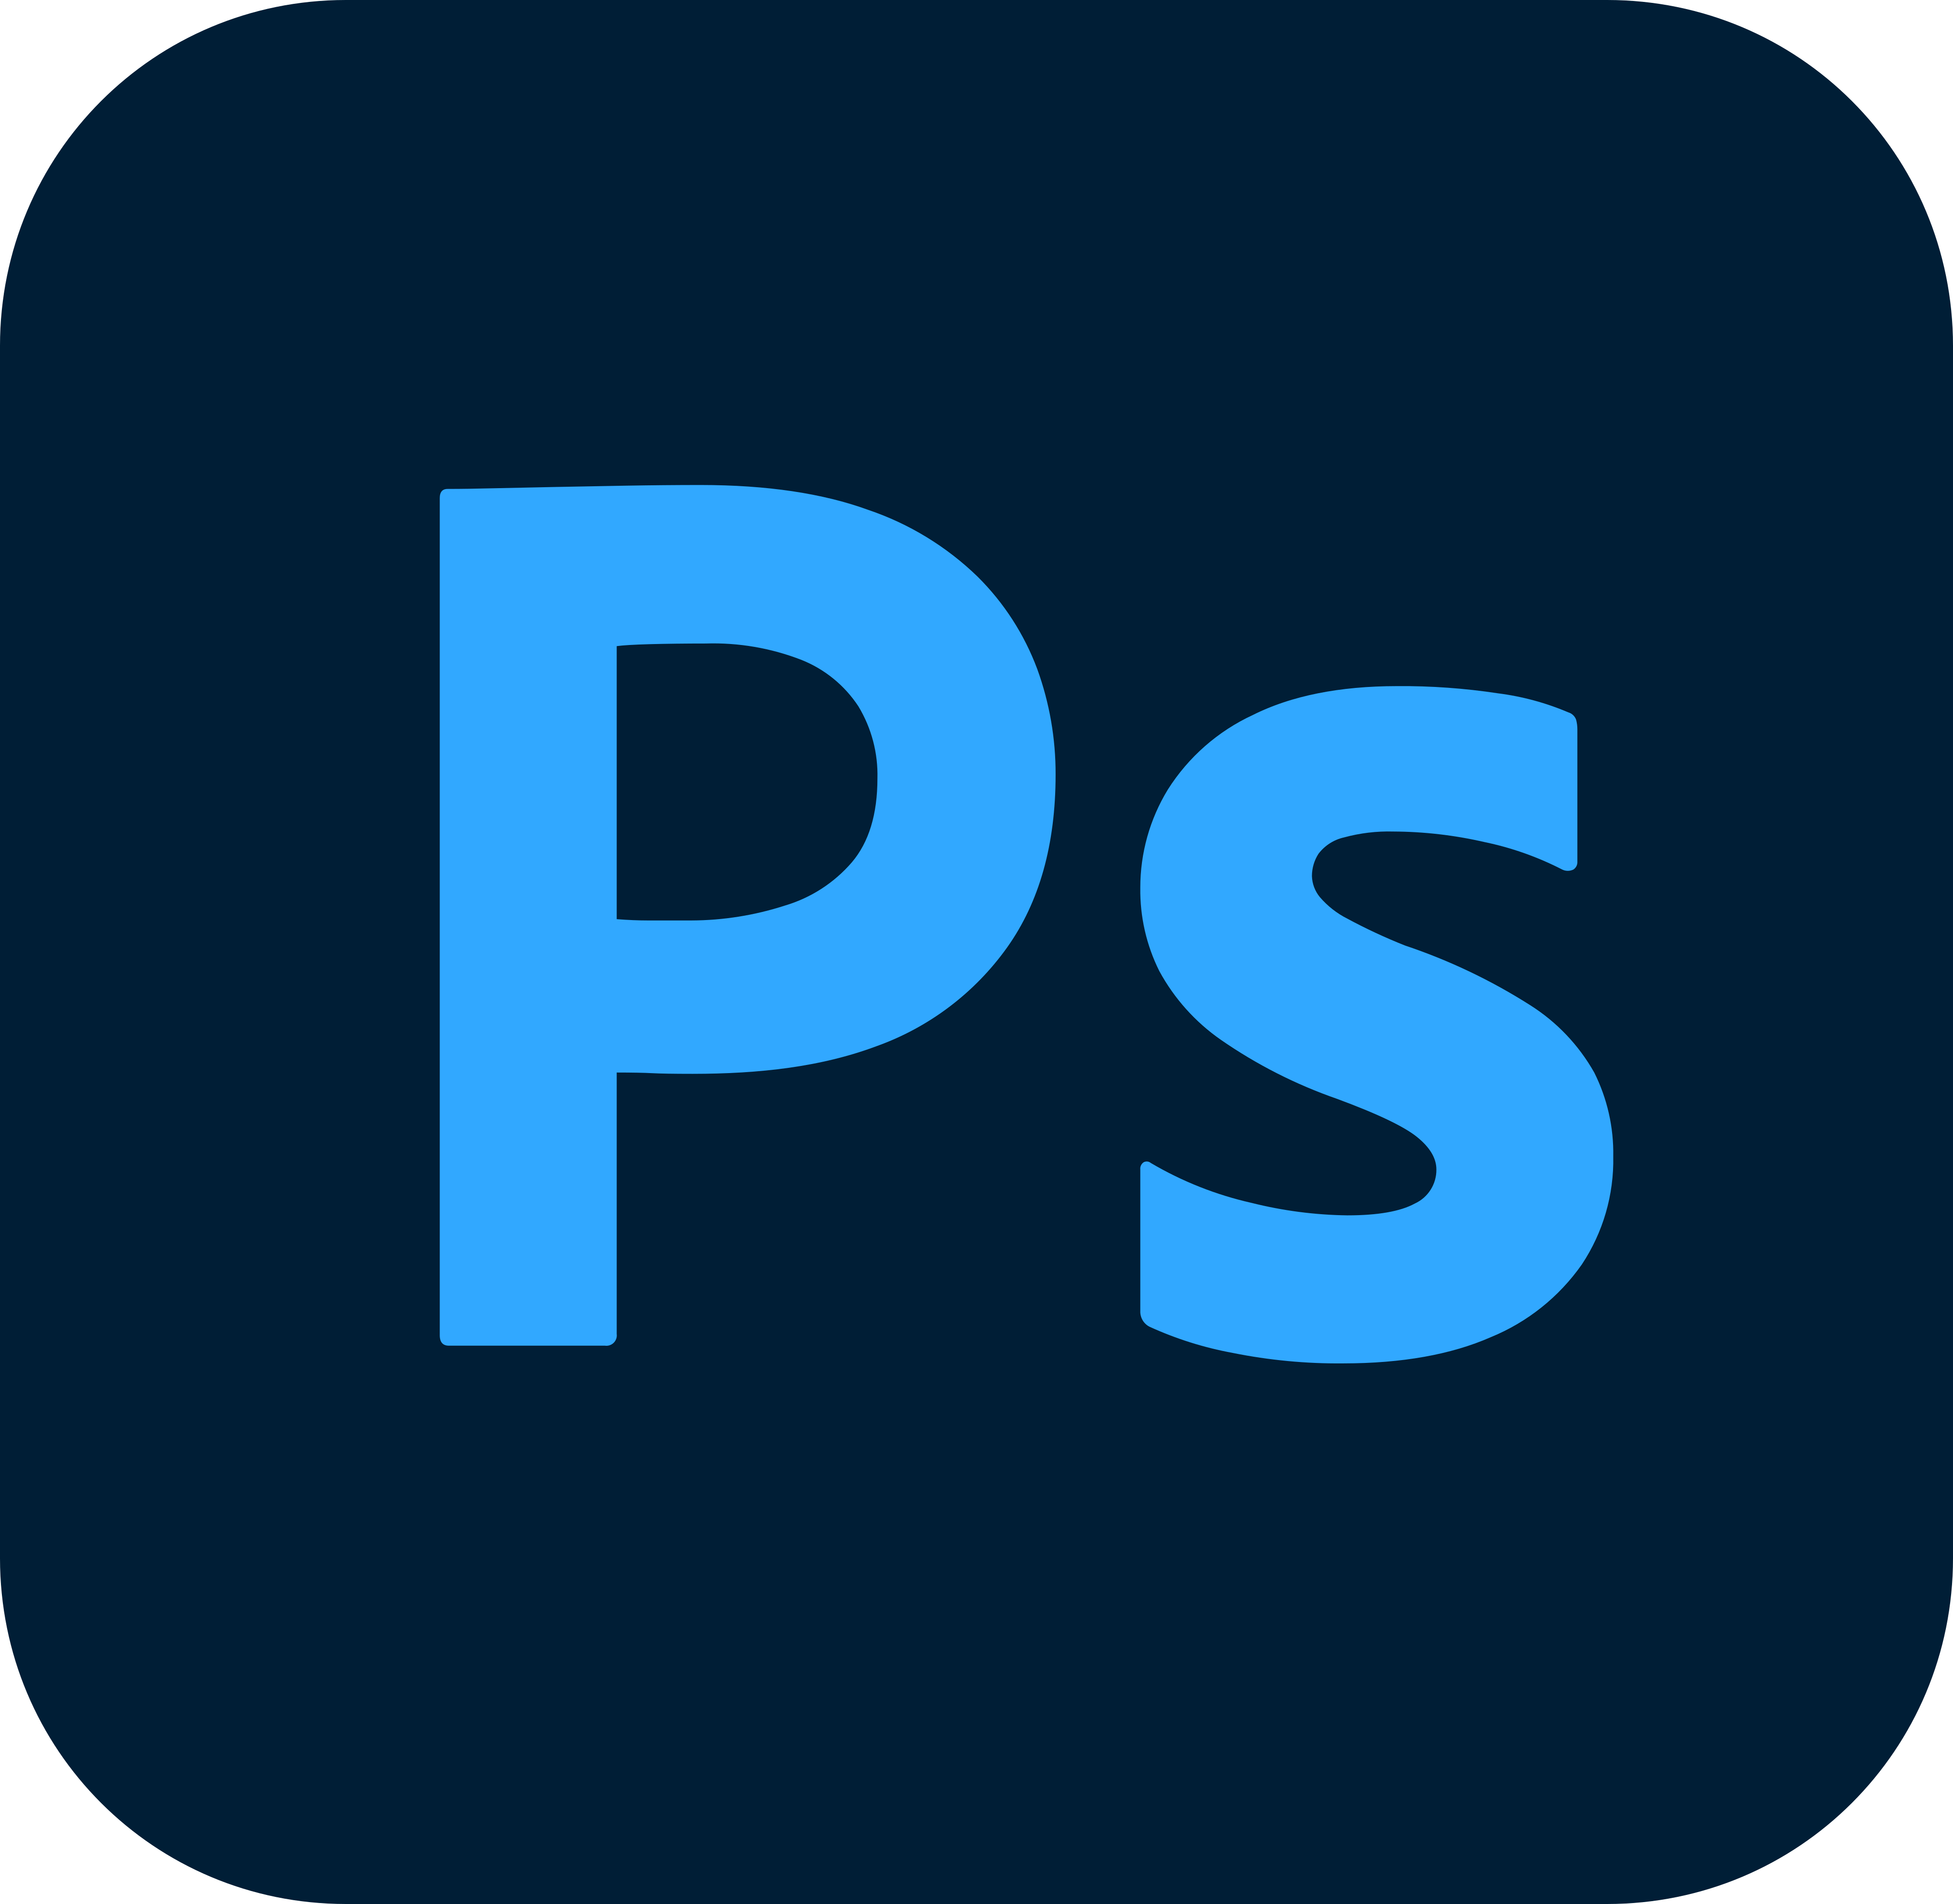 adobe photoshop logo - Adobe Photoshop Logo